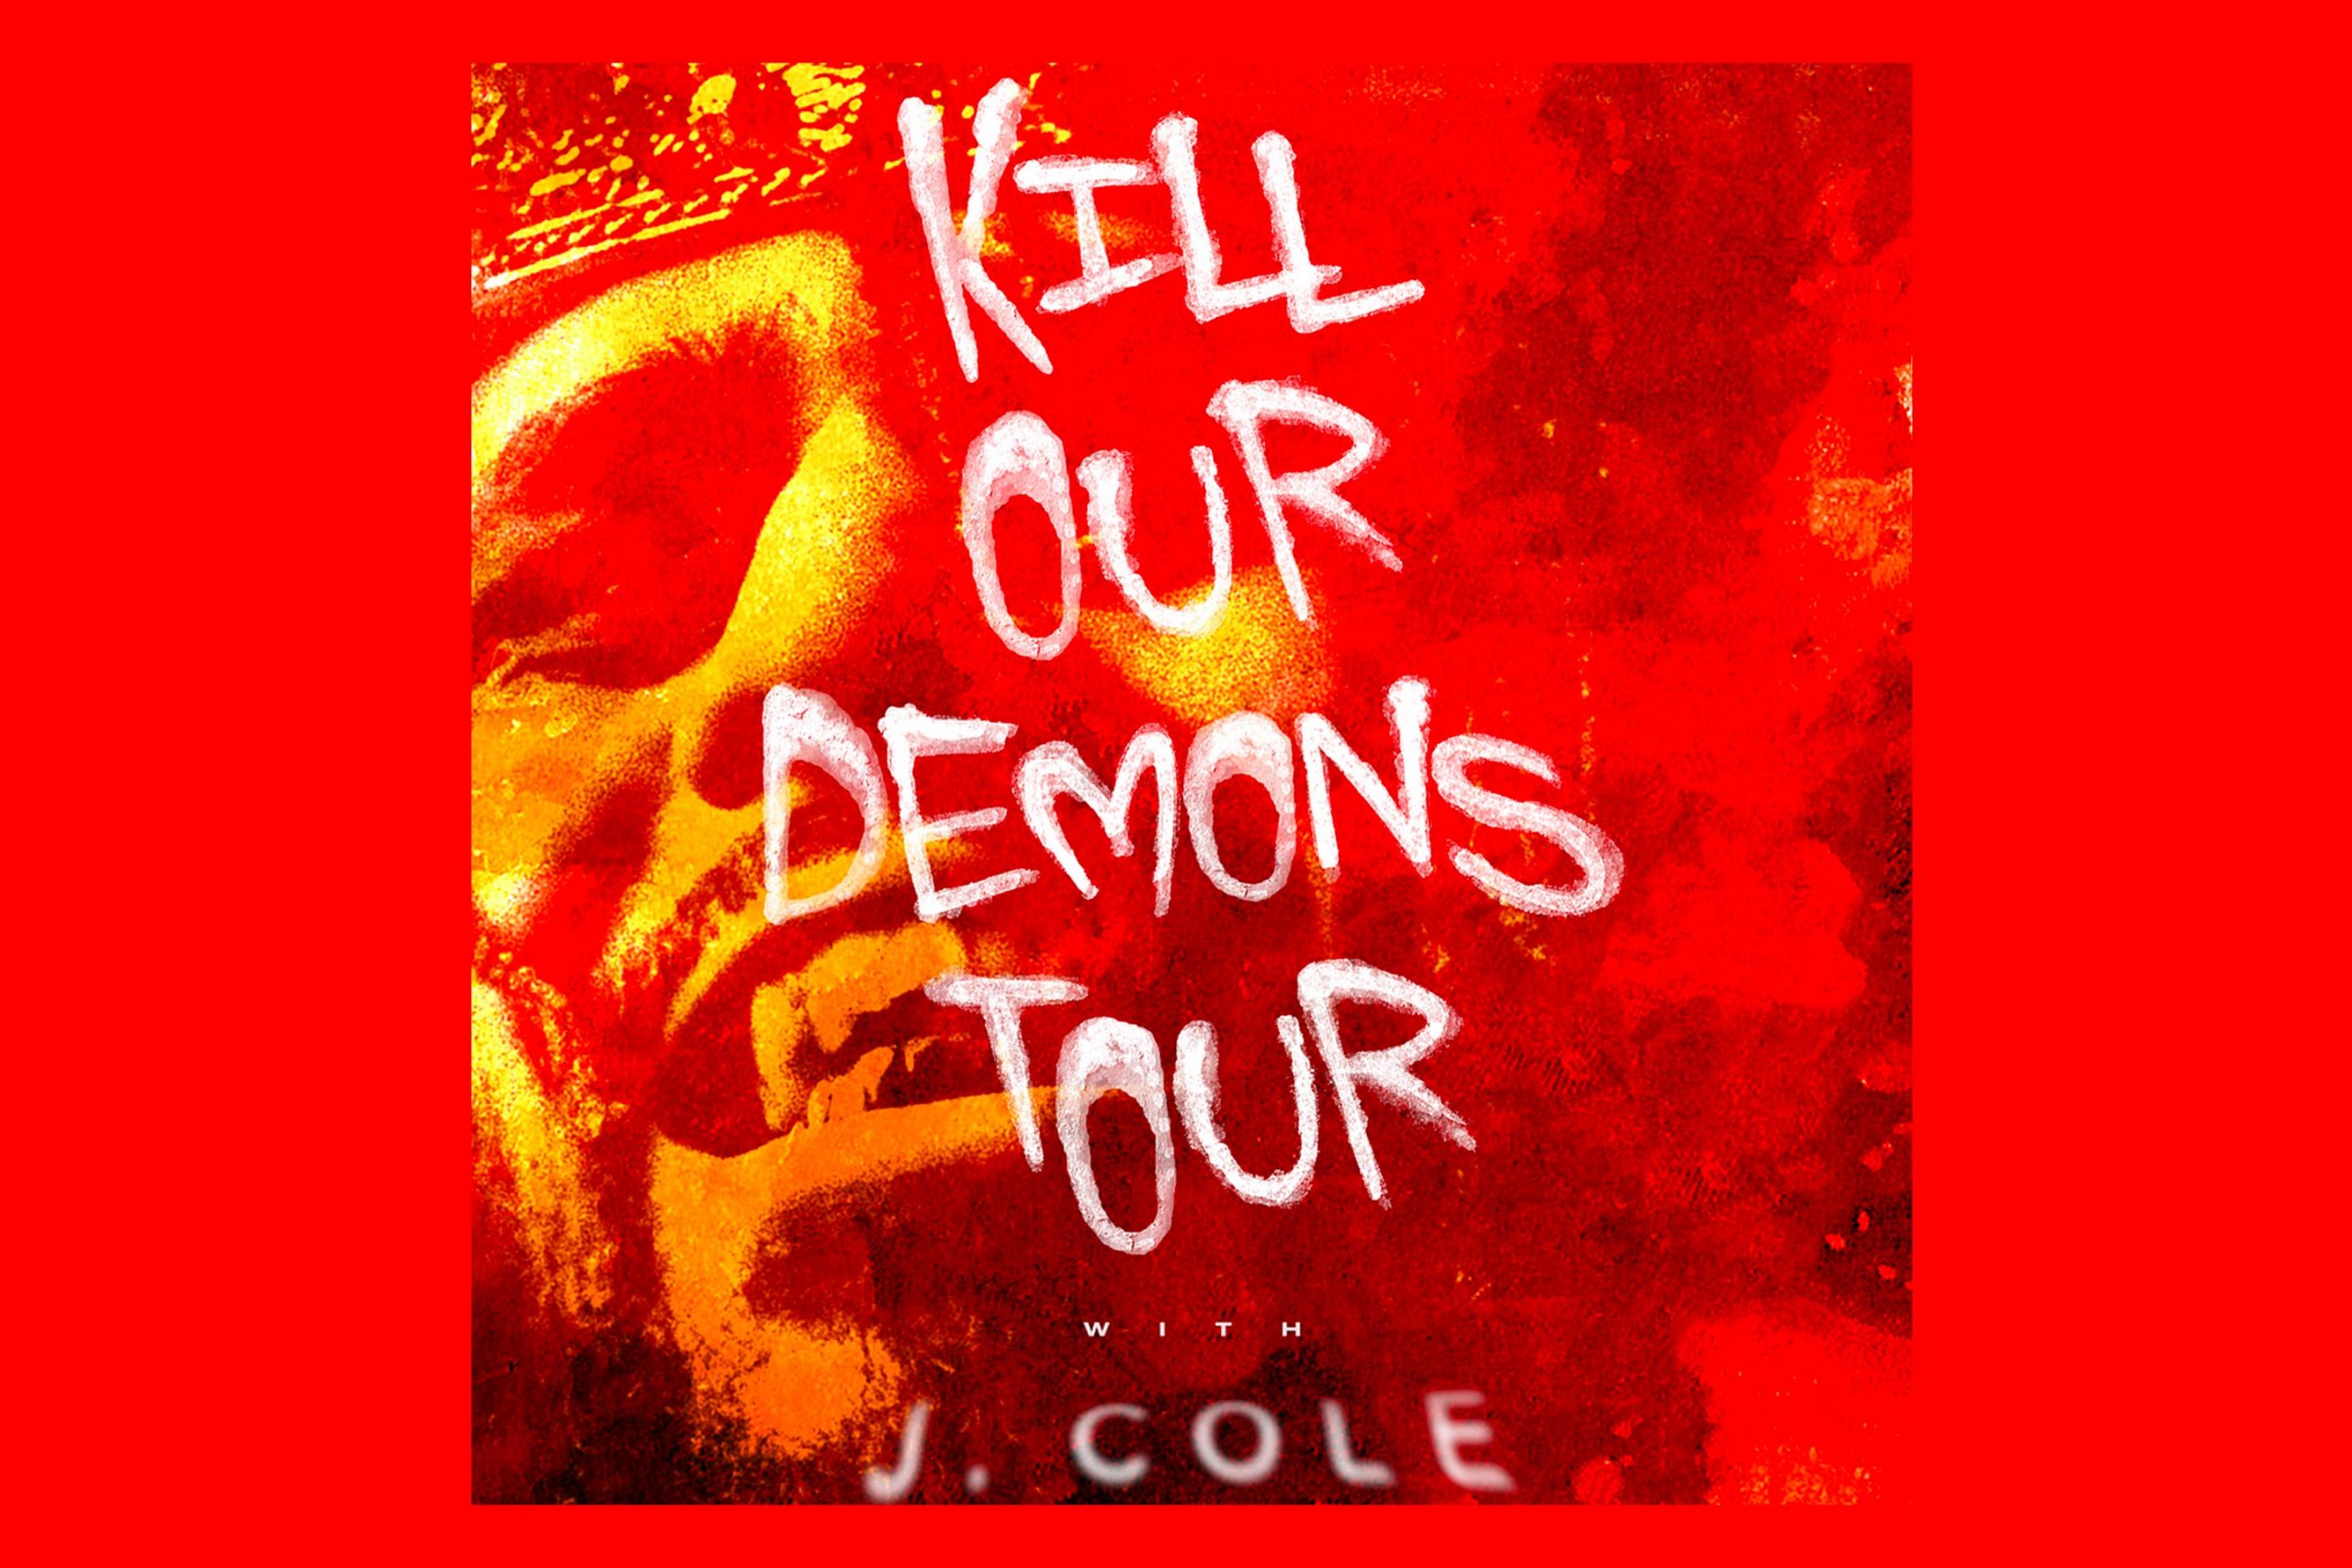 J.Cole album cover